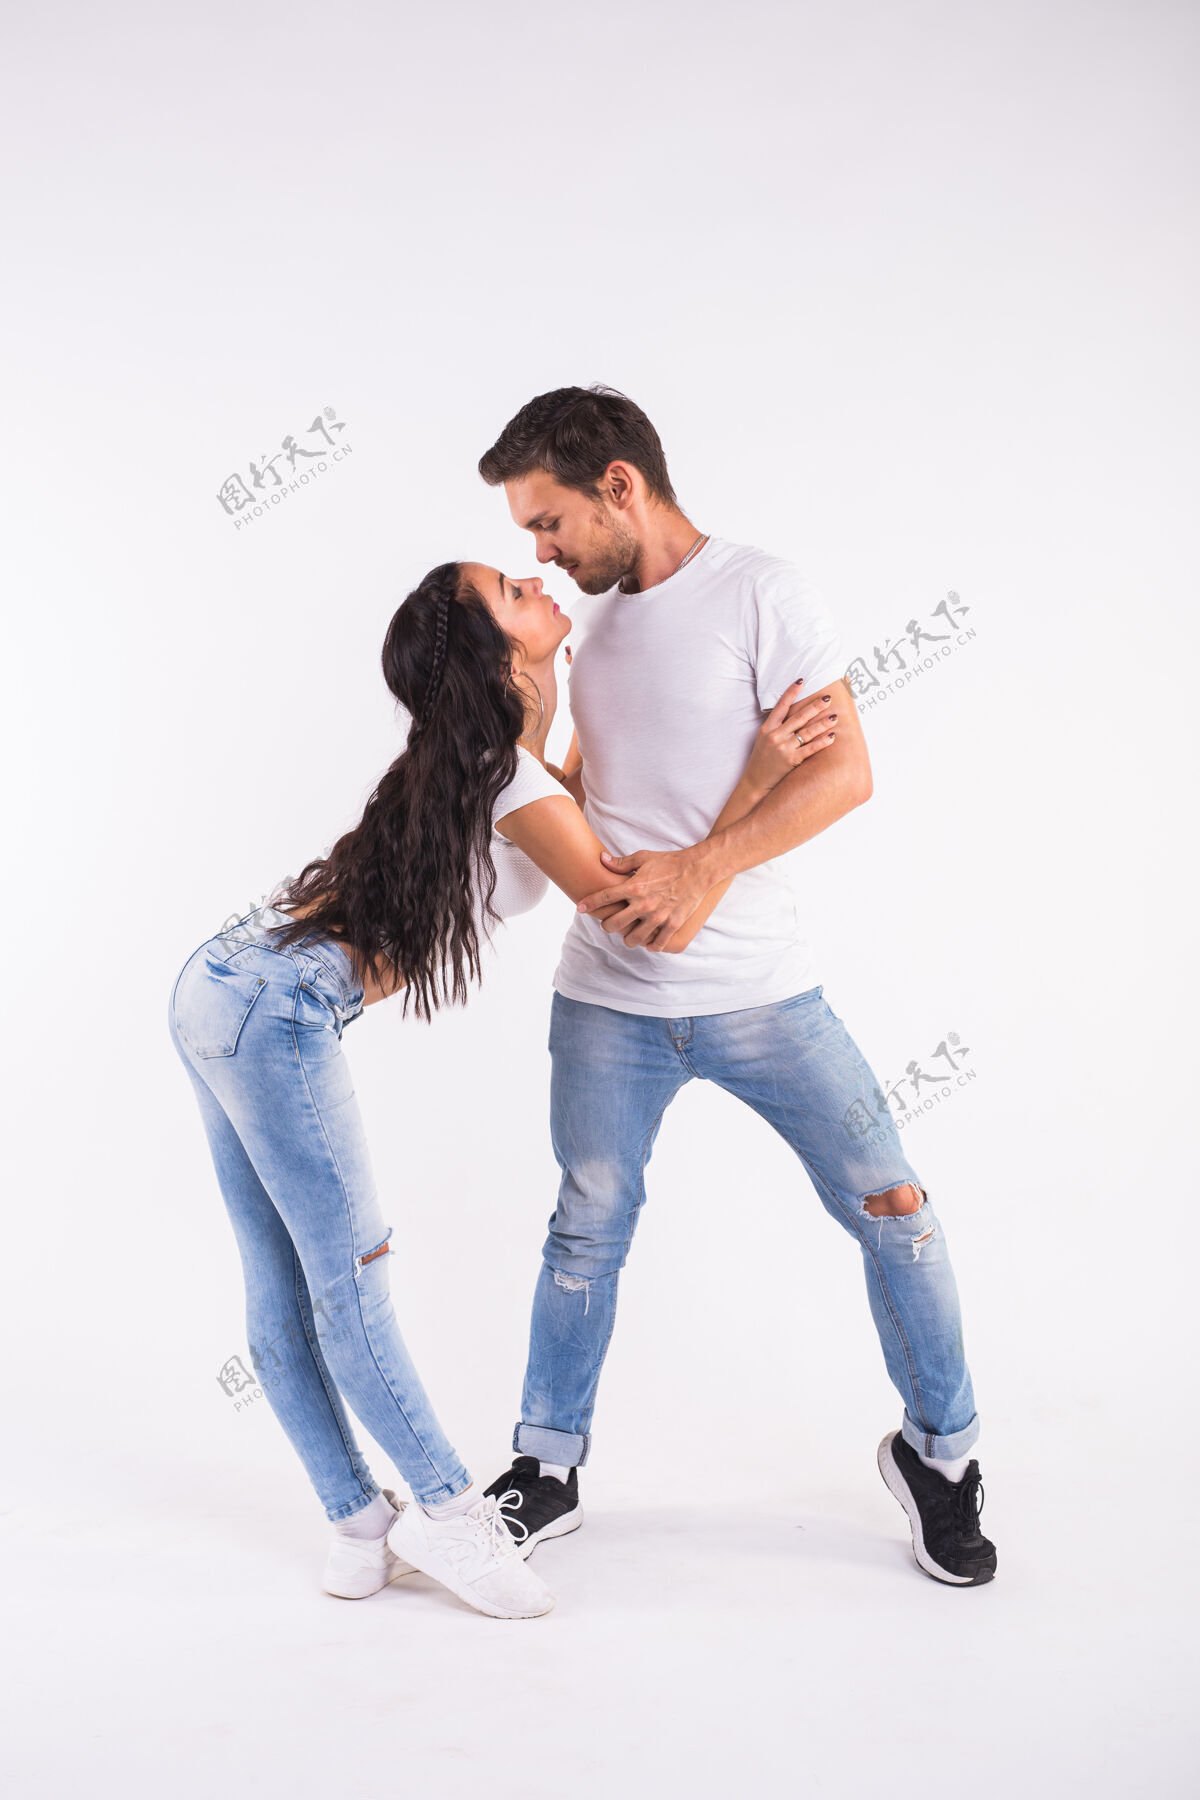 爱情一对年轻的情侣在跳社交舞 巴查塔舞 梅伦格舞 萨尔萨舞 kizomba.2号在白色房间摆出优雅的姿势风格激情动作